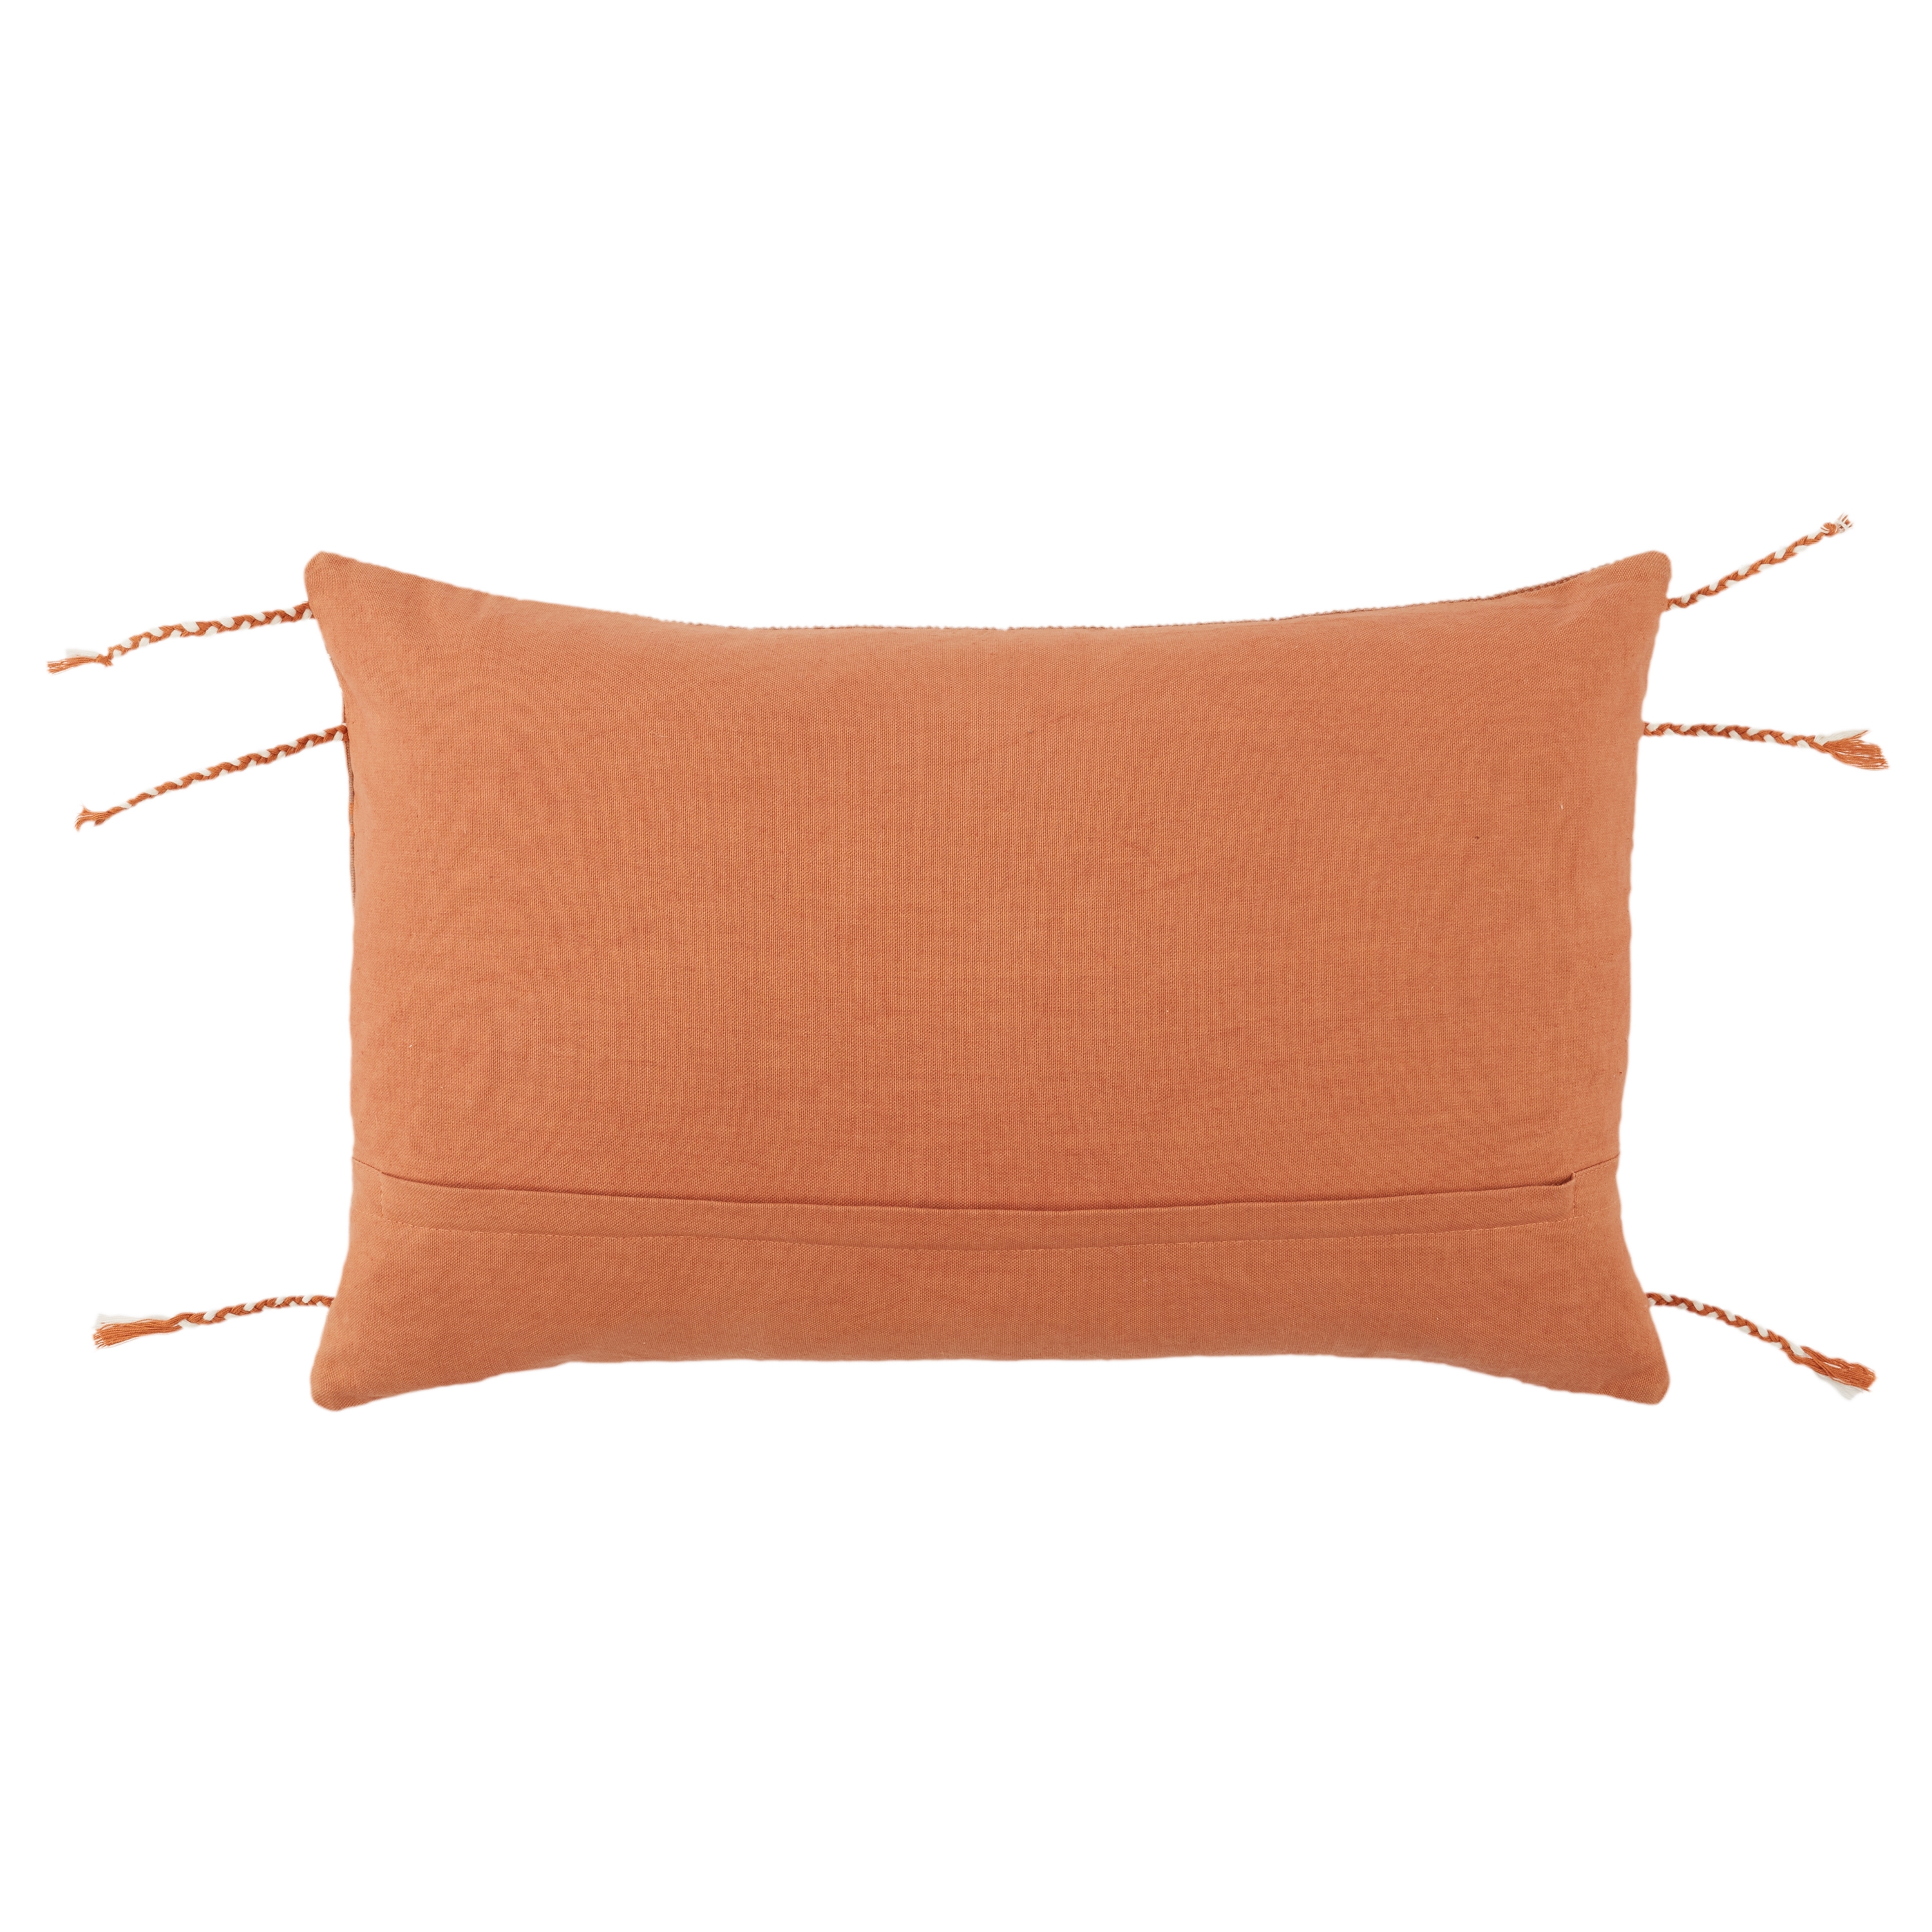 Bohdi Lumbar Pillow, Terracotta, 21" x 13" - Image 1